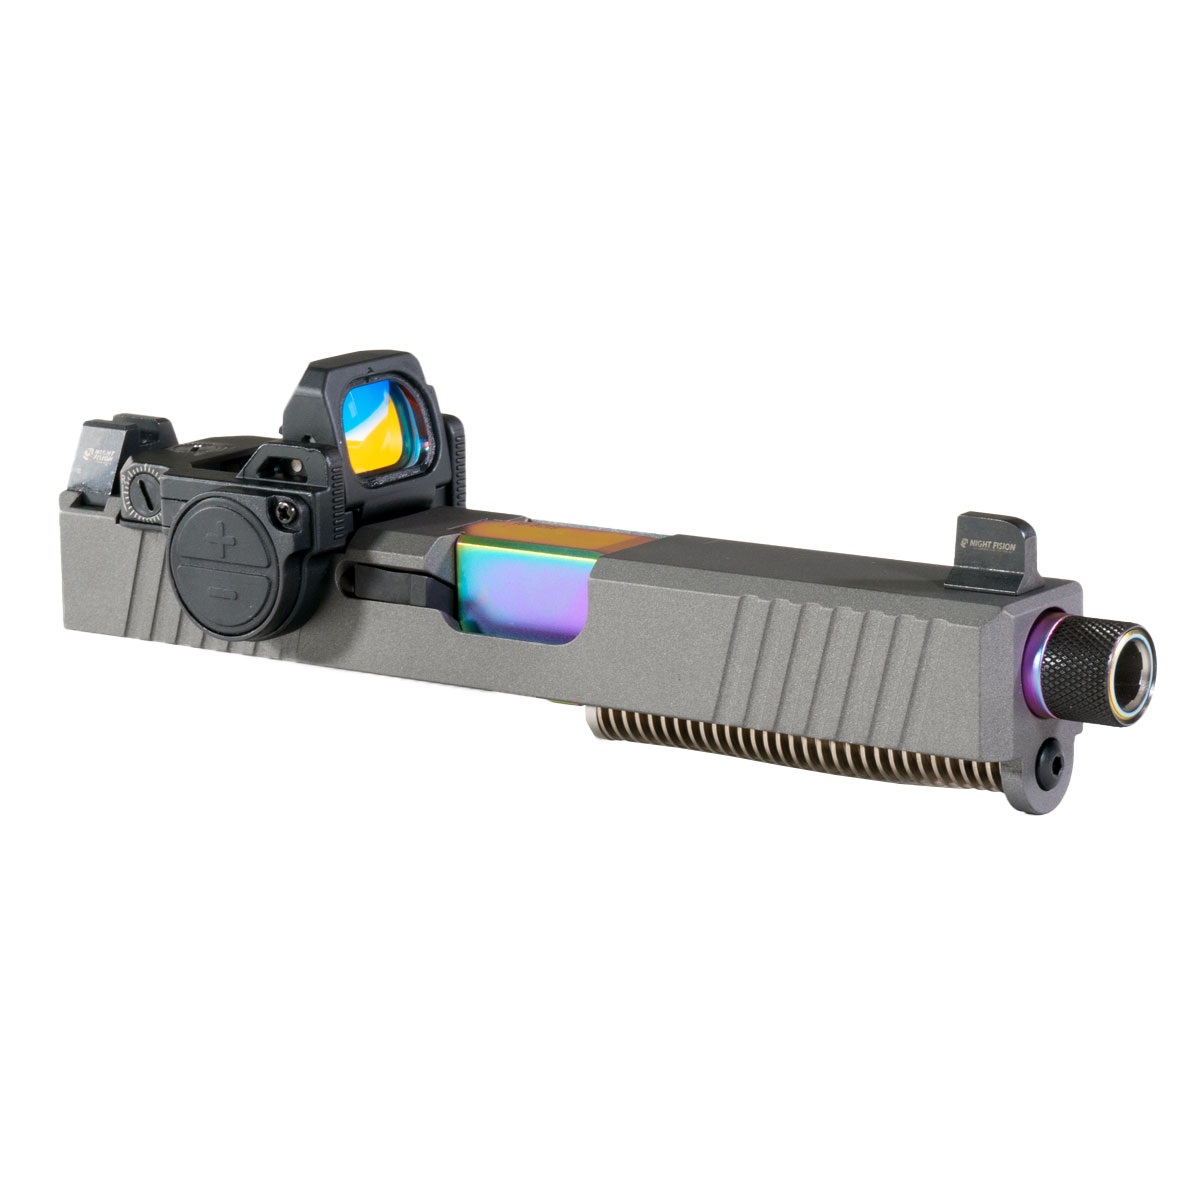 DTT 'Spectrum Scales' 9mm Complete Slide Kit - Glock 19 Gen 1-3 Compatible